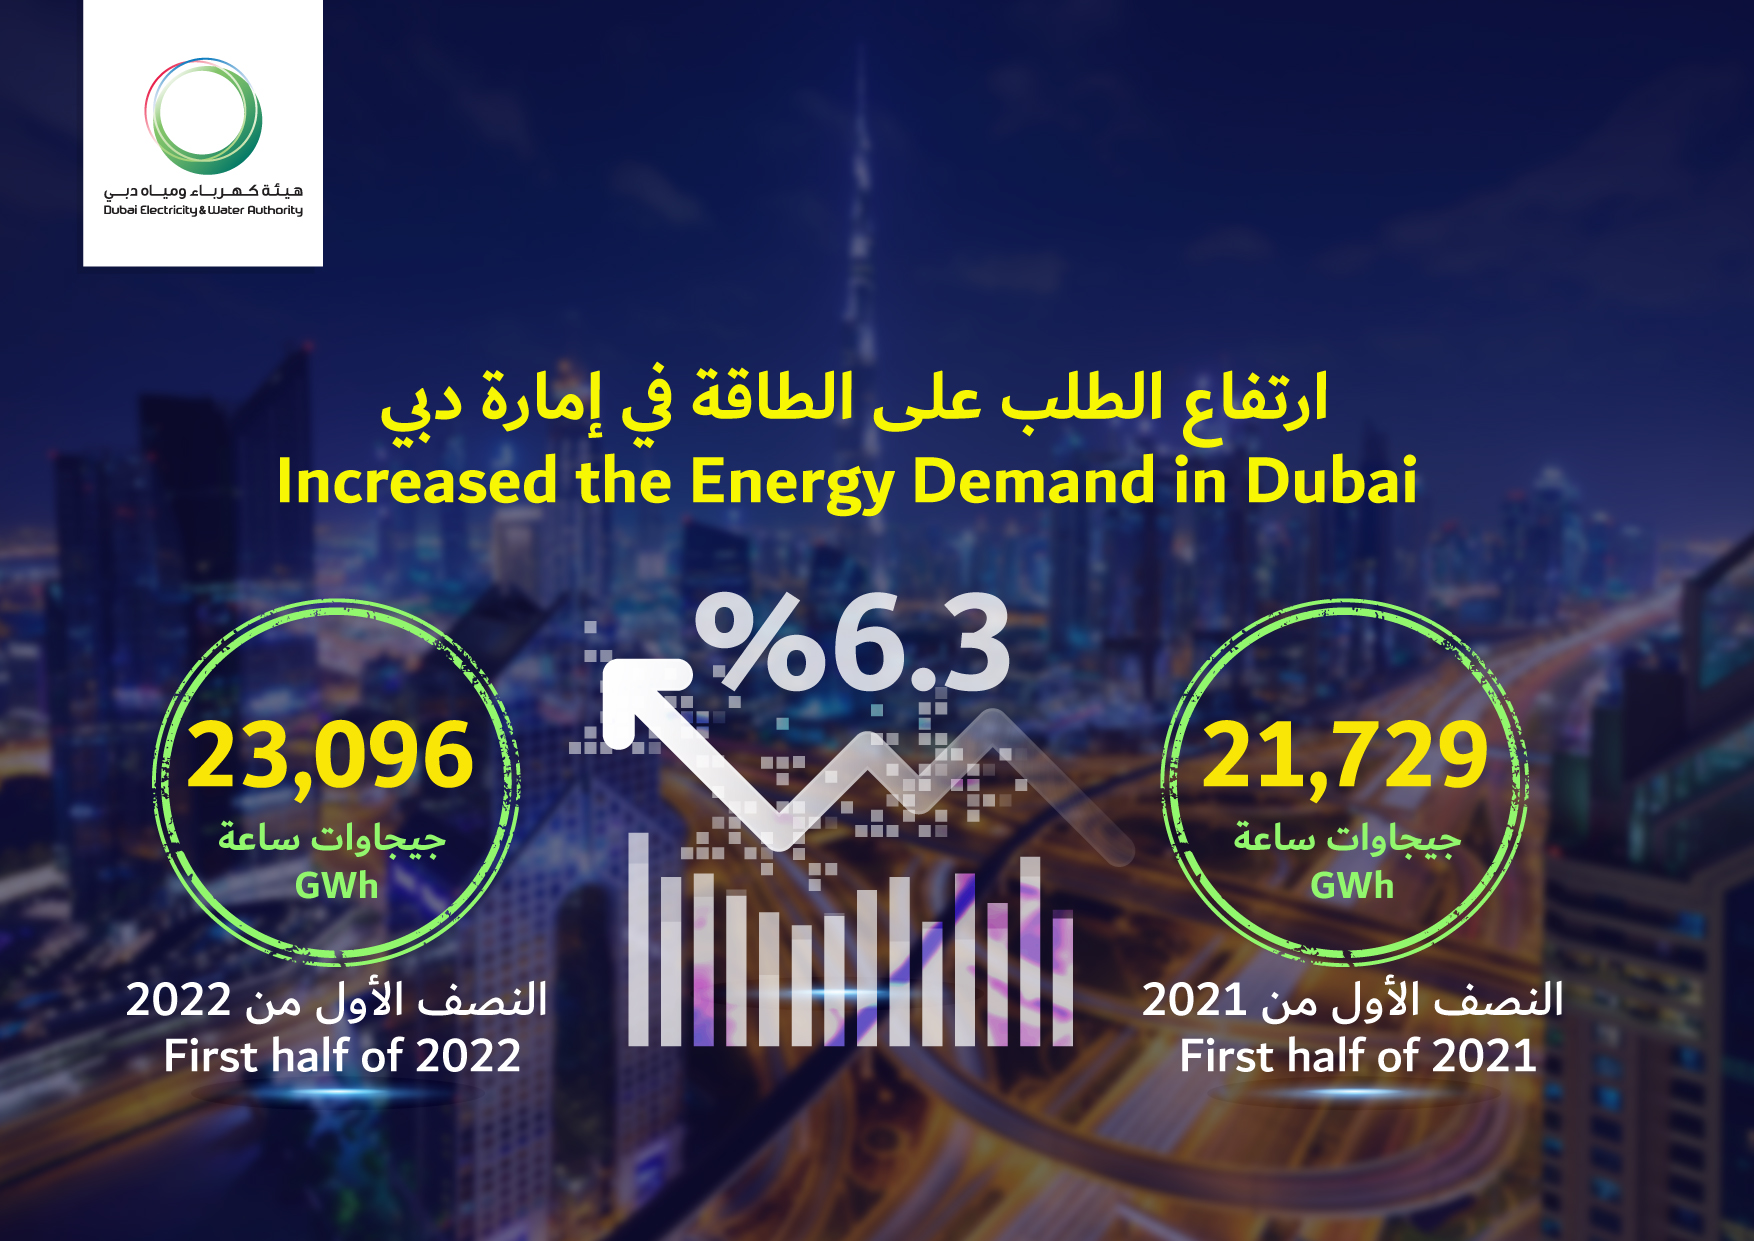 سجلت دبي زيادة بنسبة 6.3٪ في الطلب على الطاقة خلال النصف الأول من عام 2022 مقارنة بالفترة نفسها من عام 2021